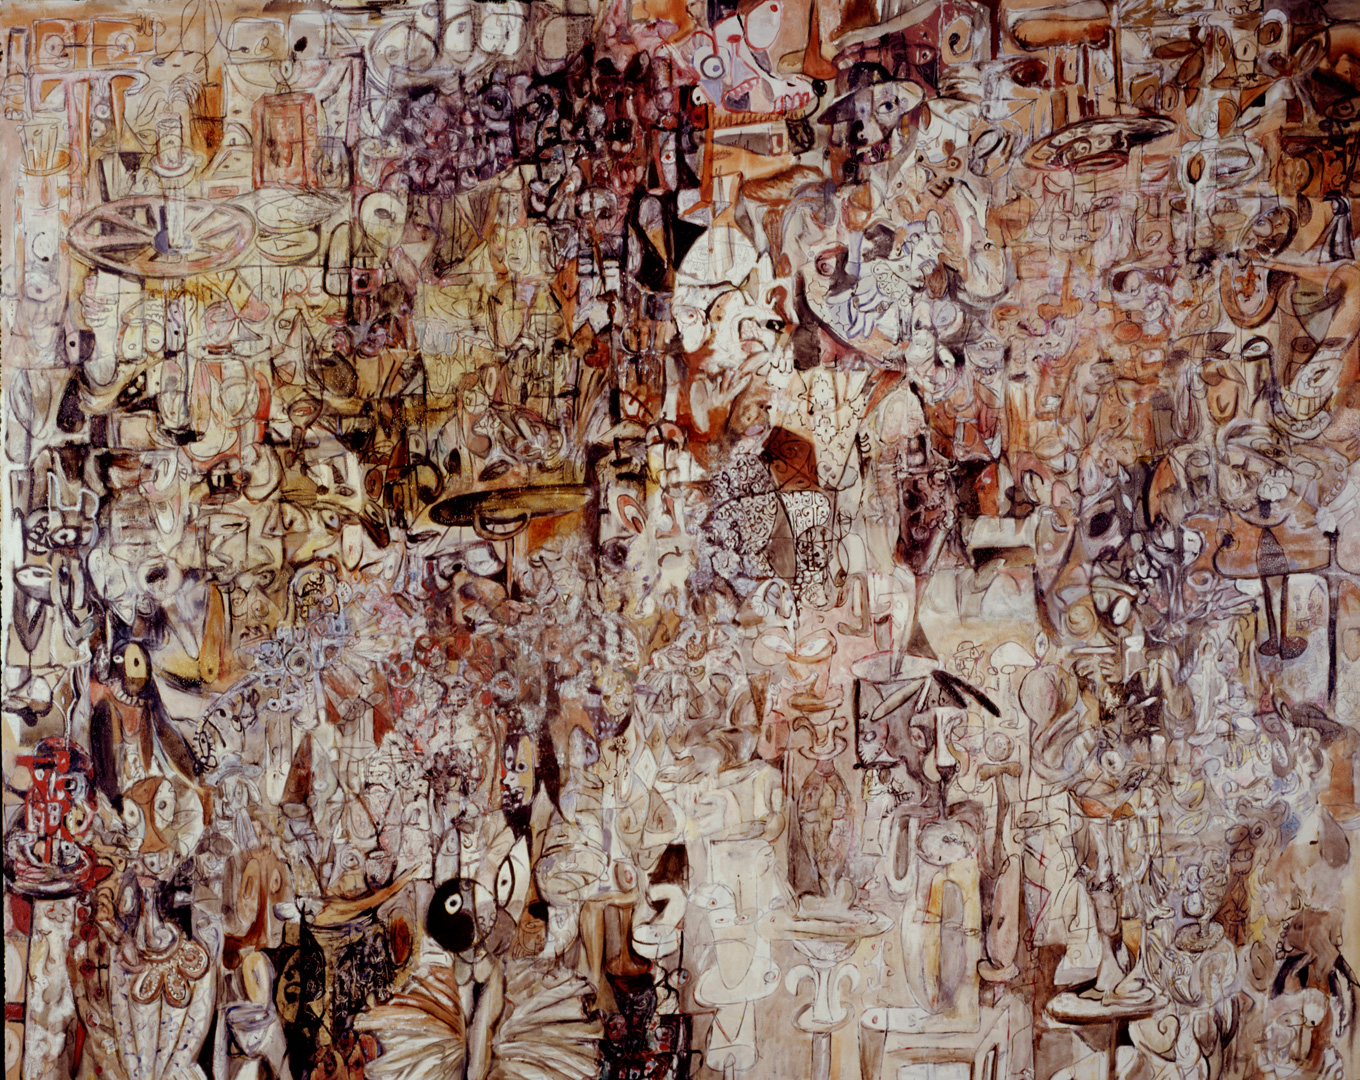 Dancing to Miles, 1985. Джордж Кондо (George Condo) - современный американский художник. Искусственный реализм